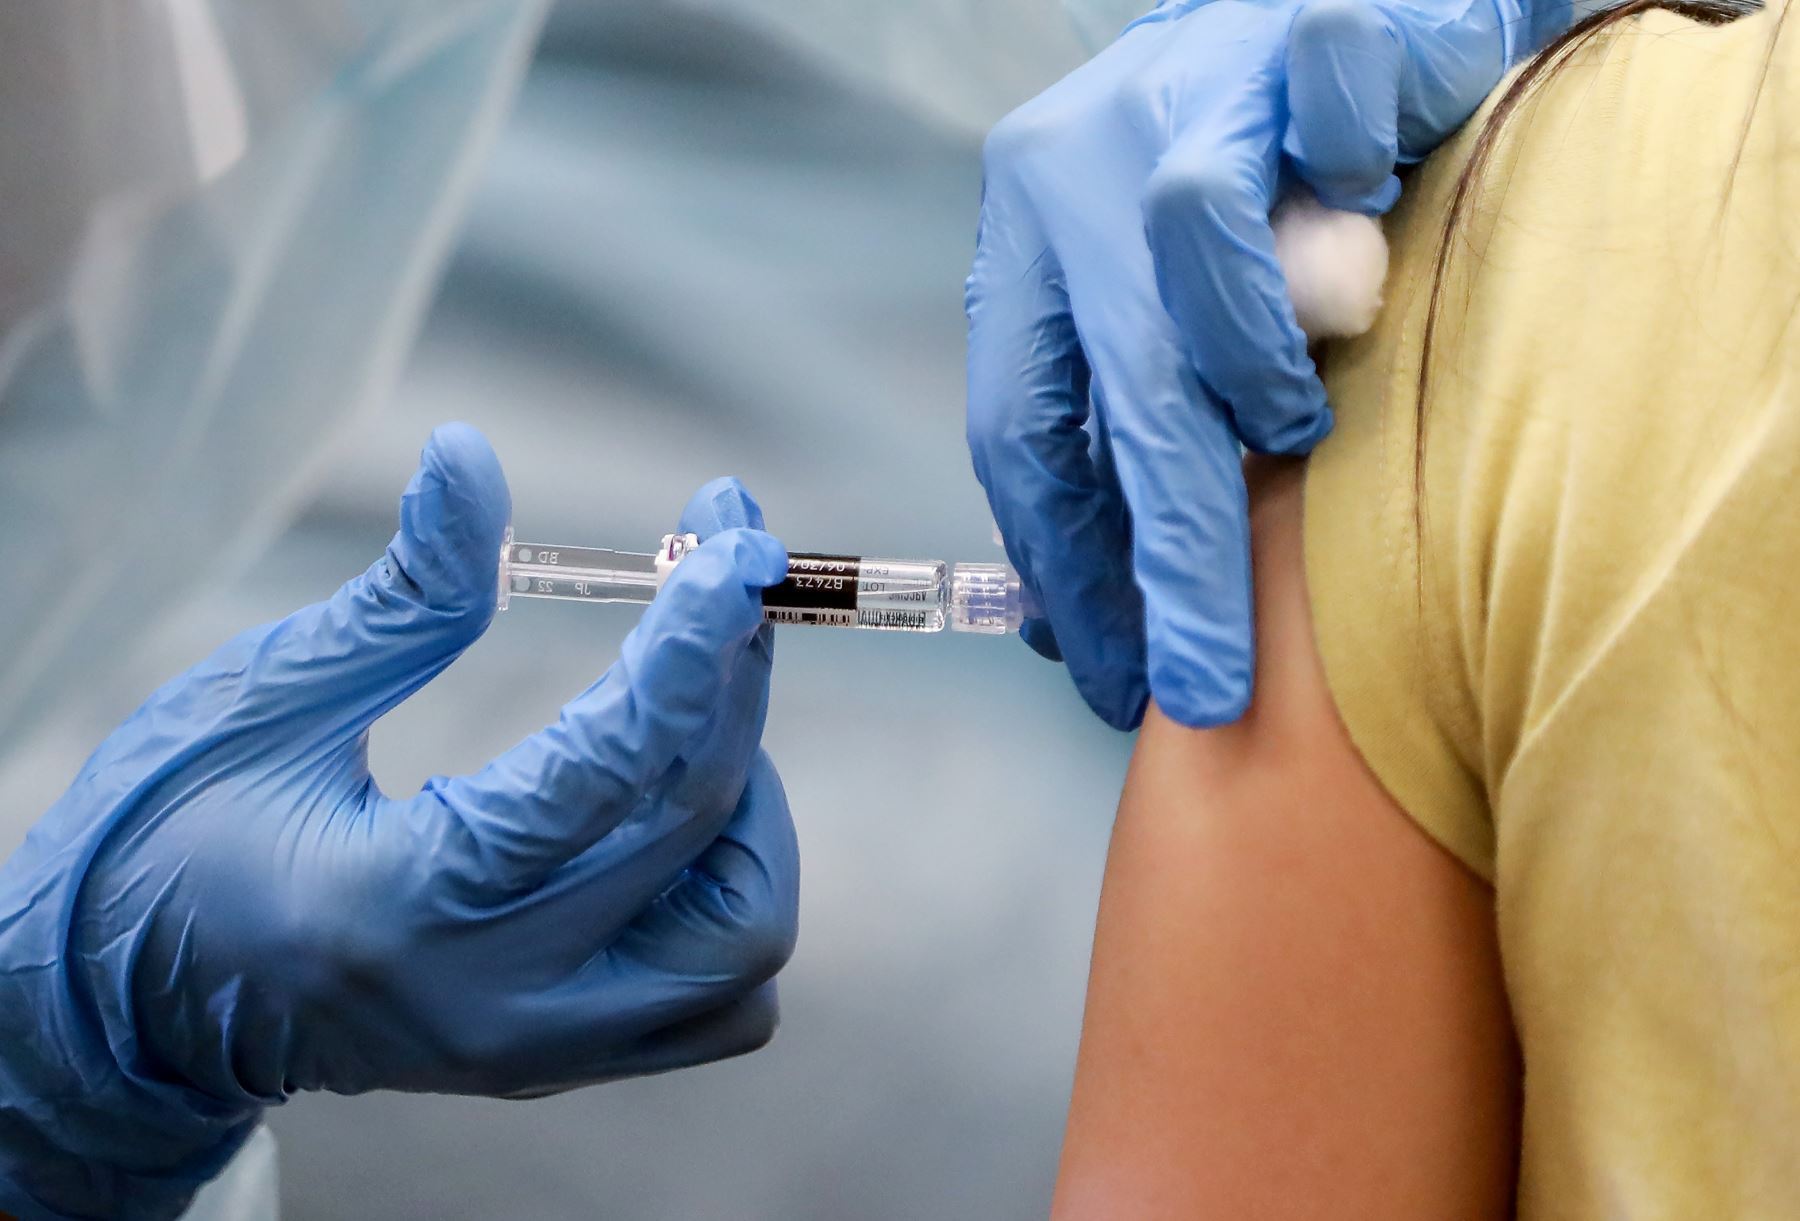 La primera generación de vacunas COVID-19 parece resistir contra Delta y otras variantes conocidas, al menos en la prevención de enfermedades graves y hospitalizaciones.